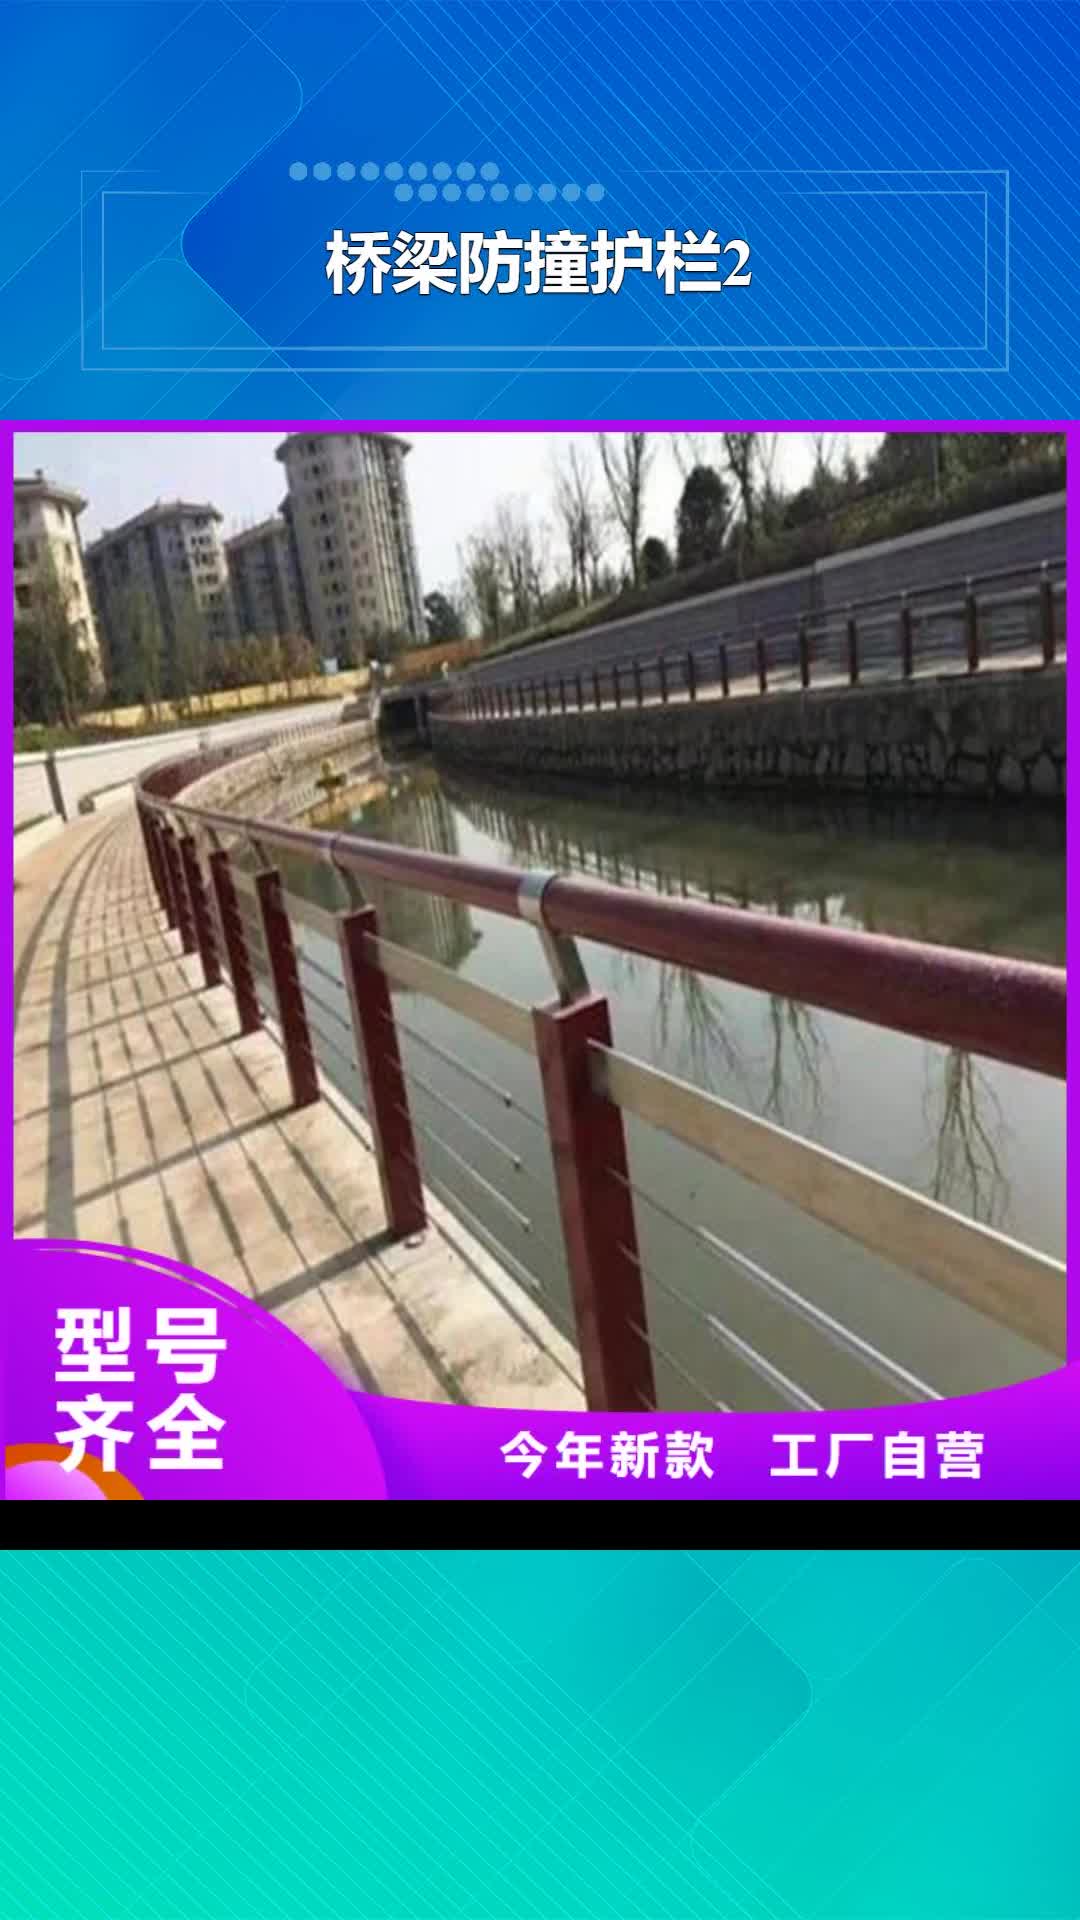 【柳州 桥梁防撞护栏2_桥梁防撞护栏高品质诚信厂家】